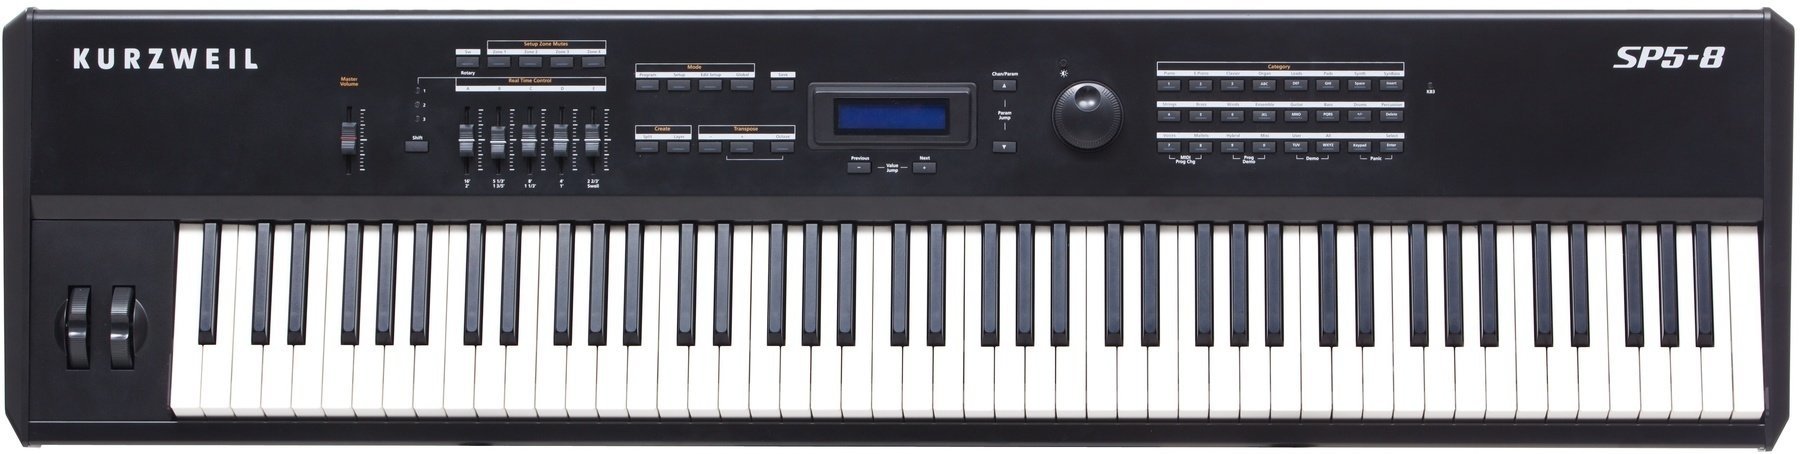 Digital Stage Piano Kurzweil SP5-8